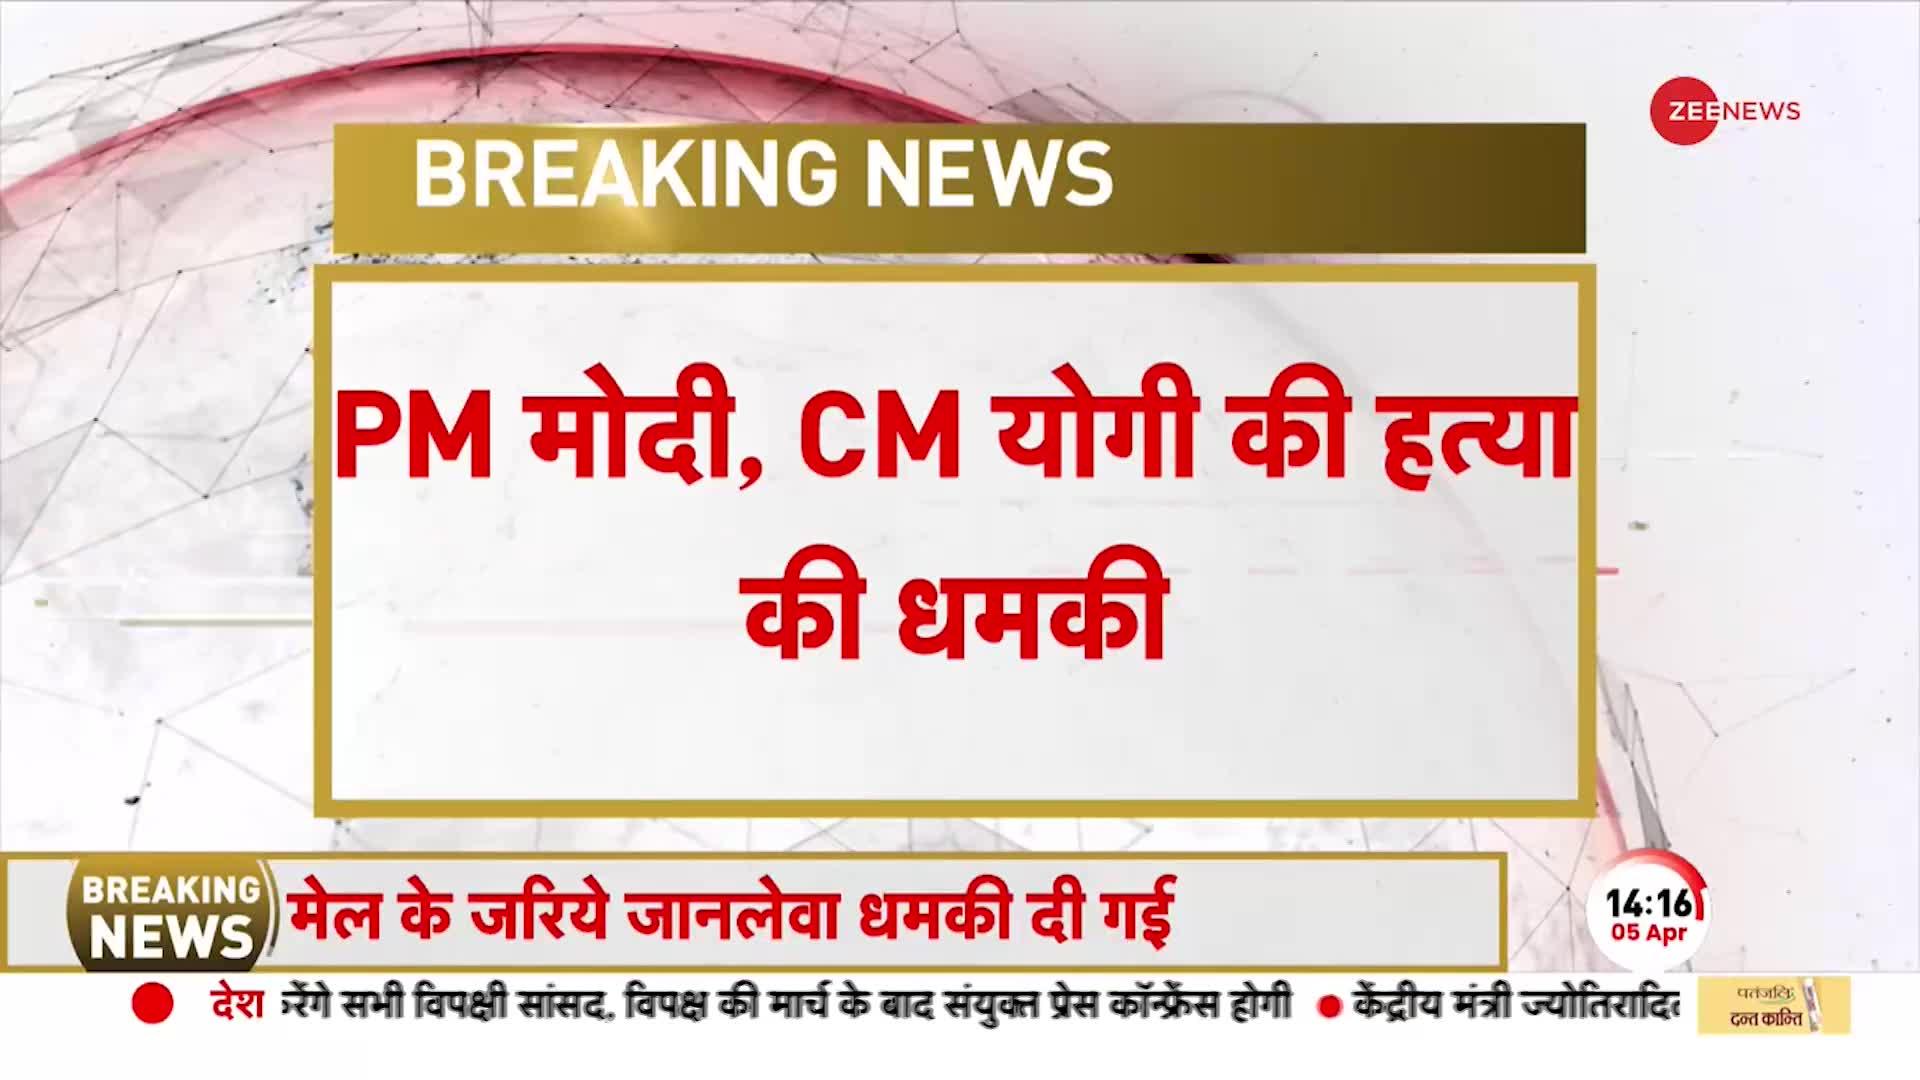 PM मोदी और CM Yogi को जान से मारने की धमकी, Noida Police ने दर्ज की FIR